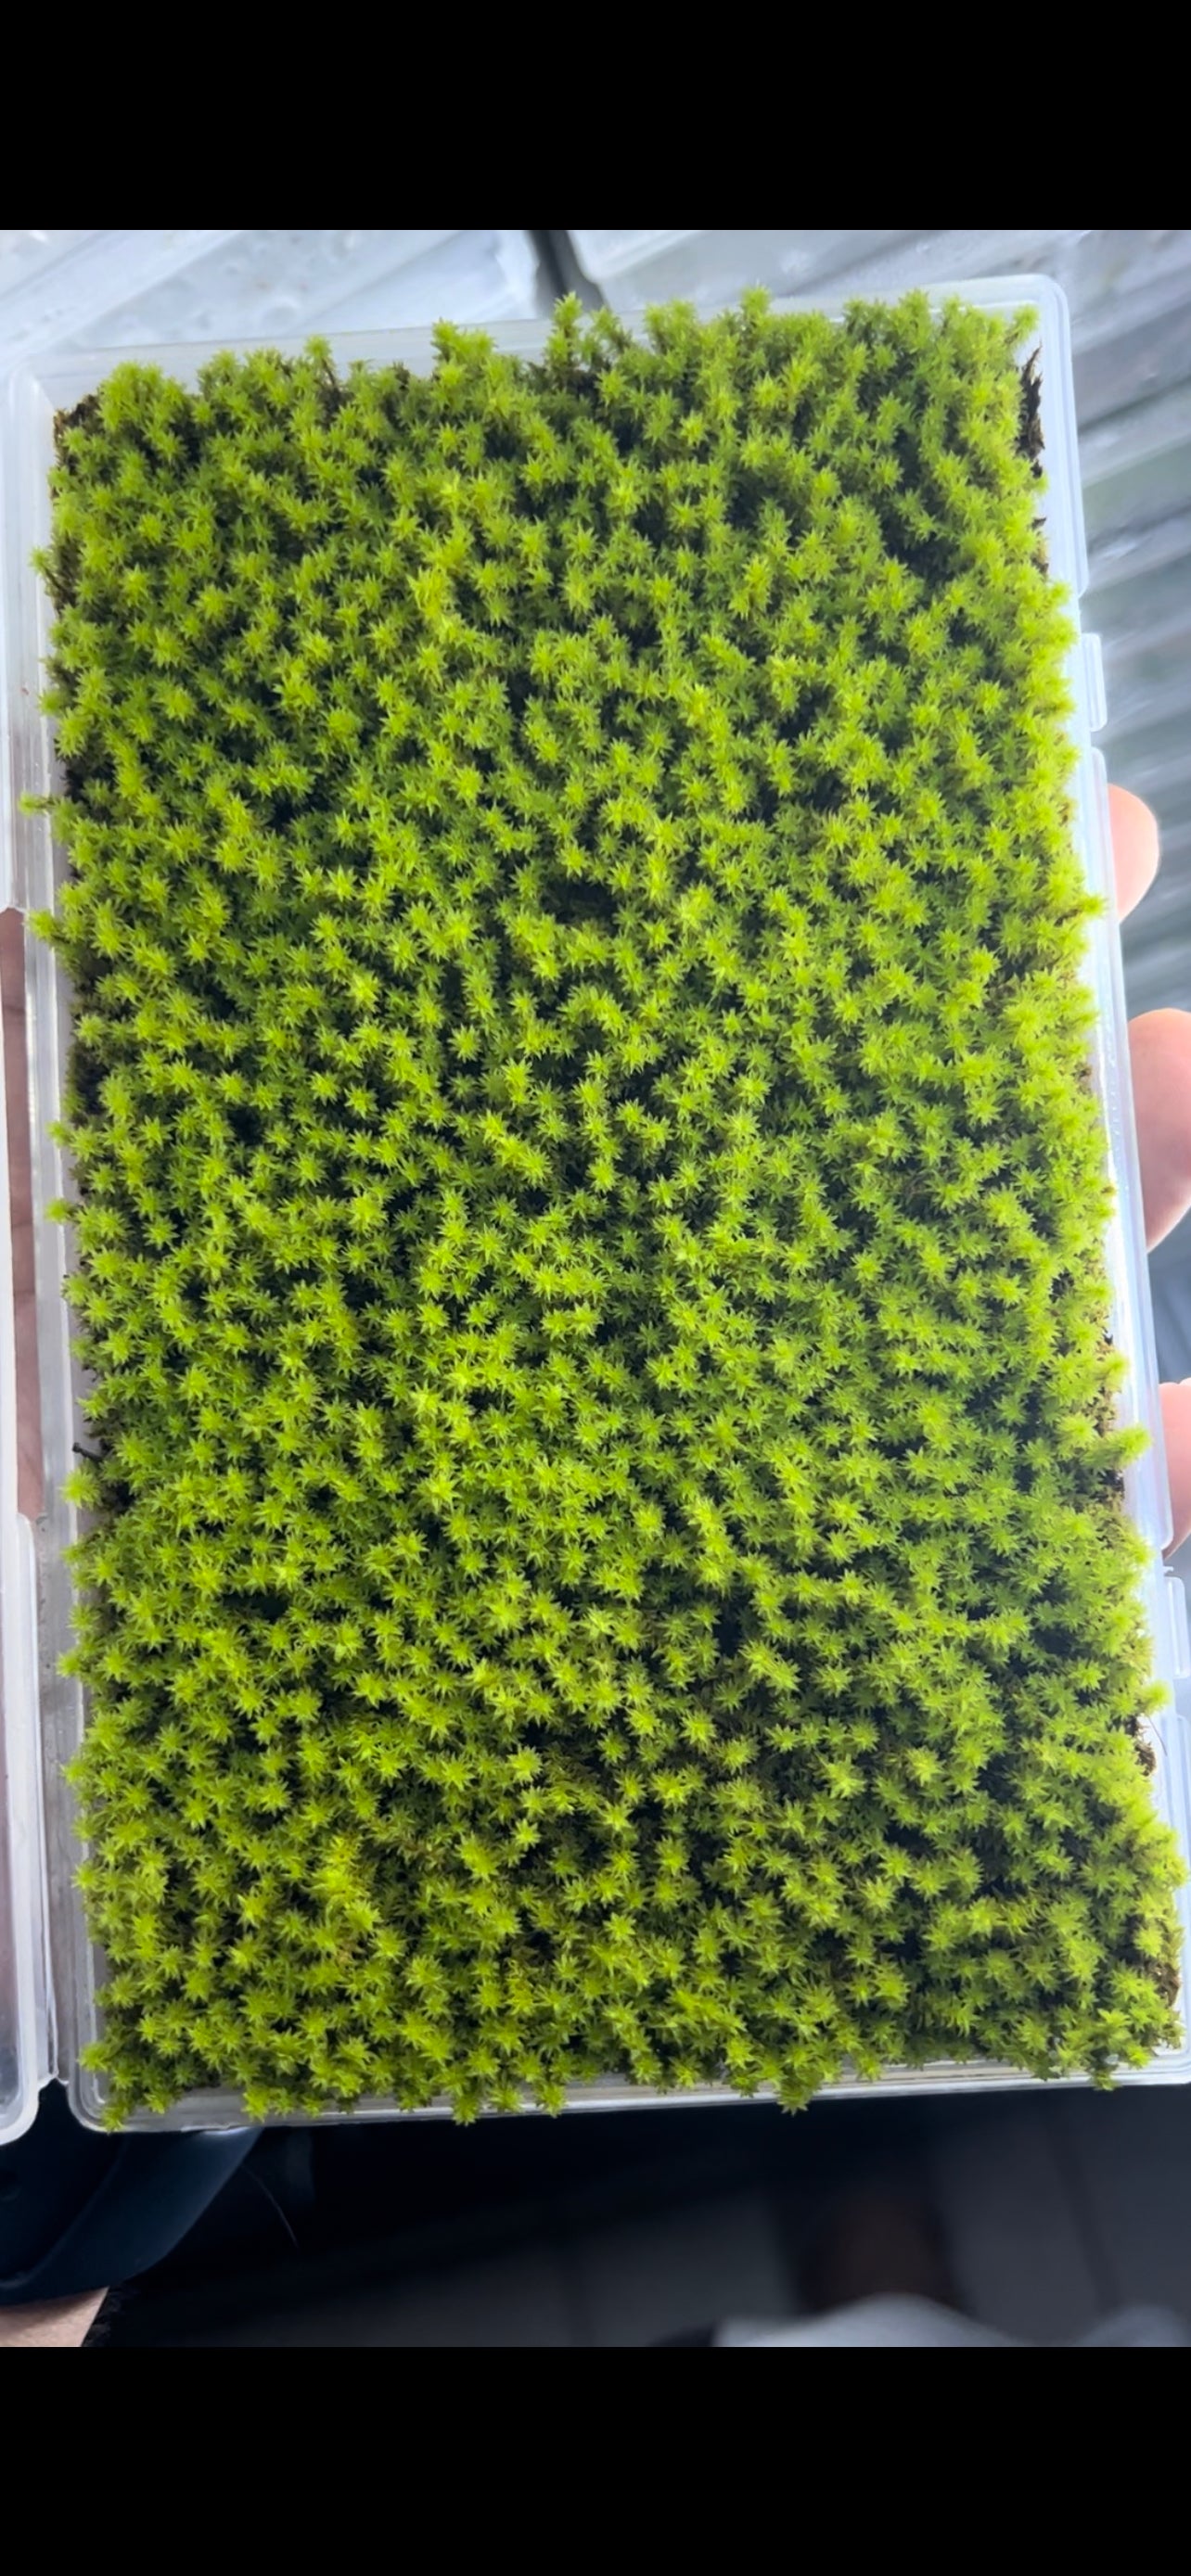 Pillow moss trimming?